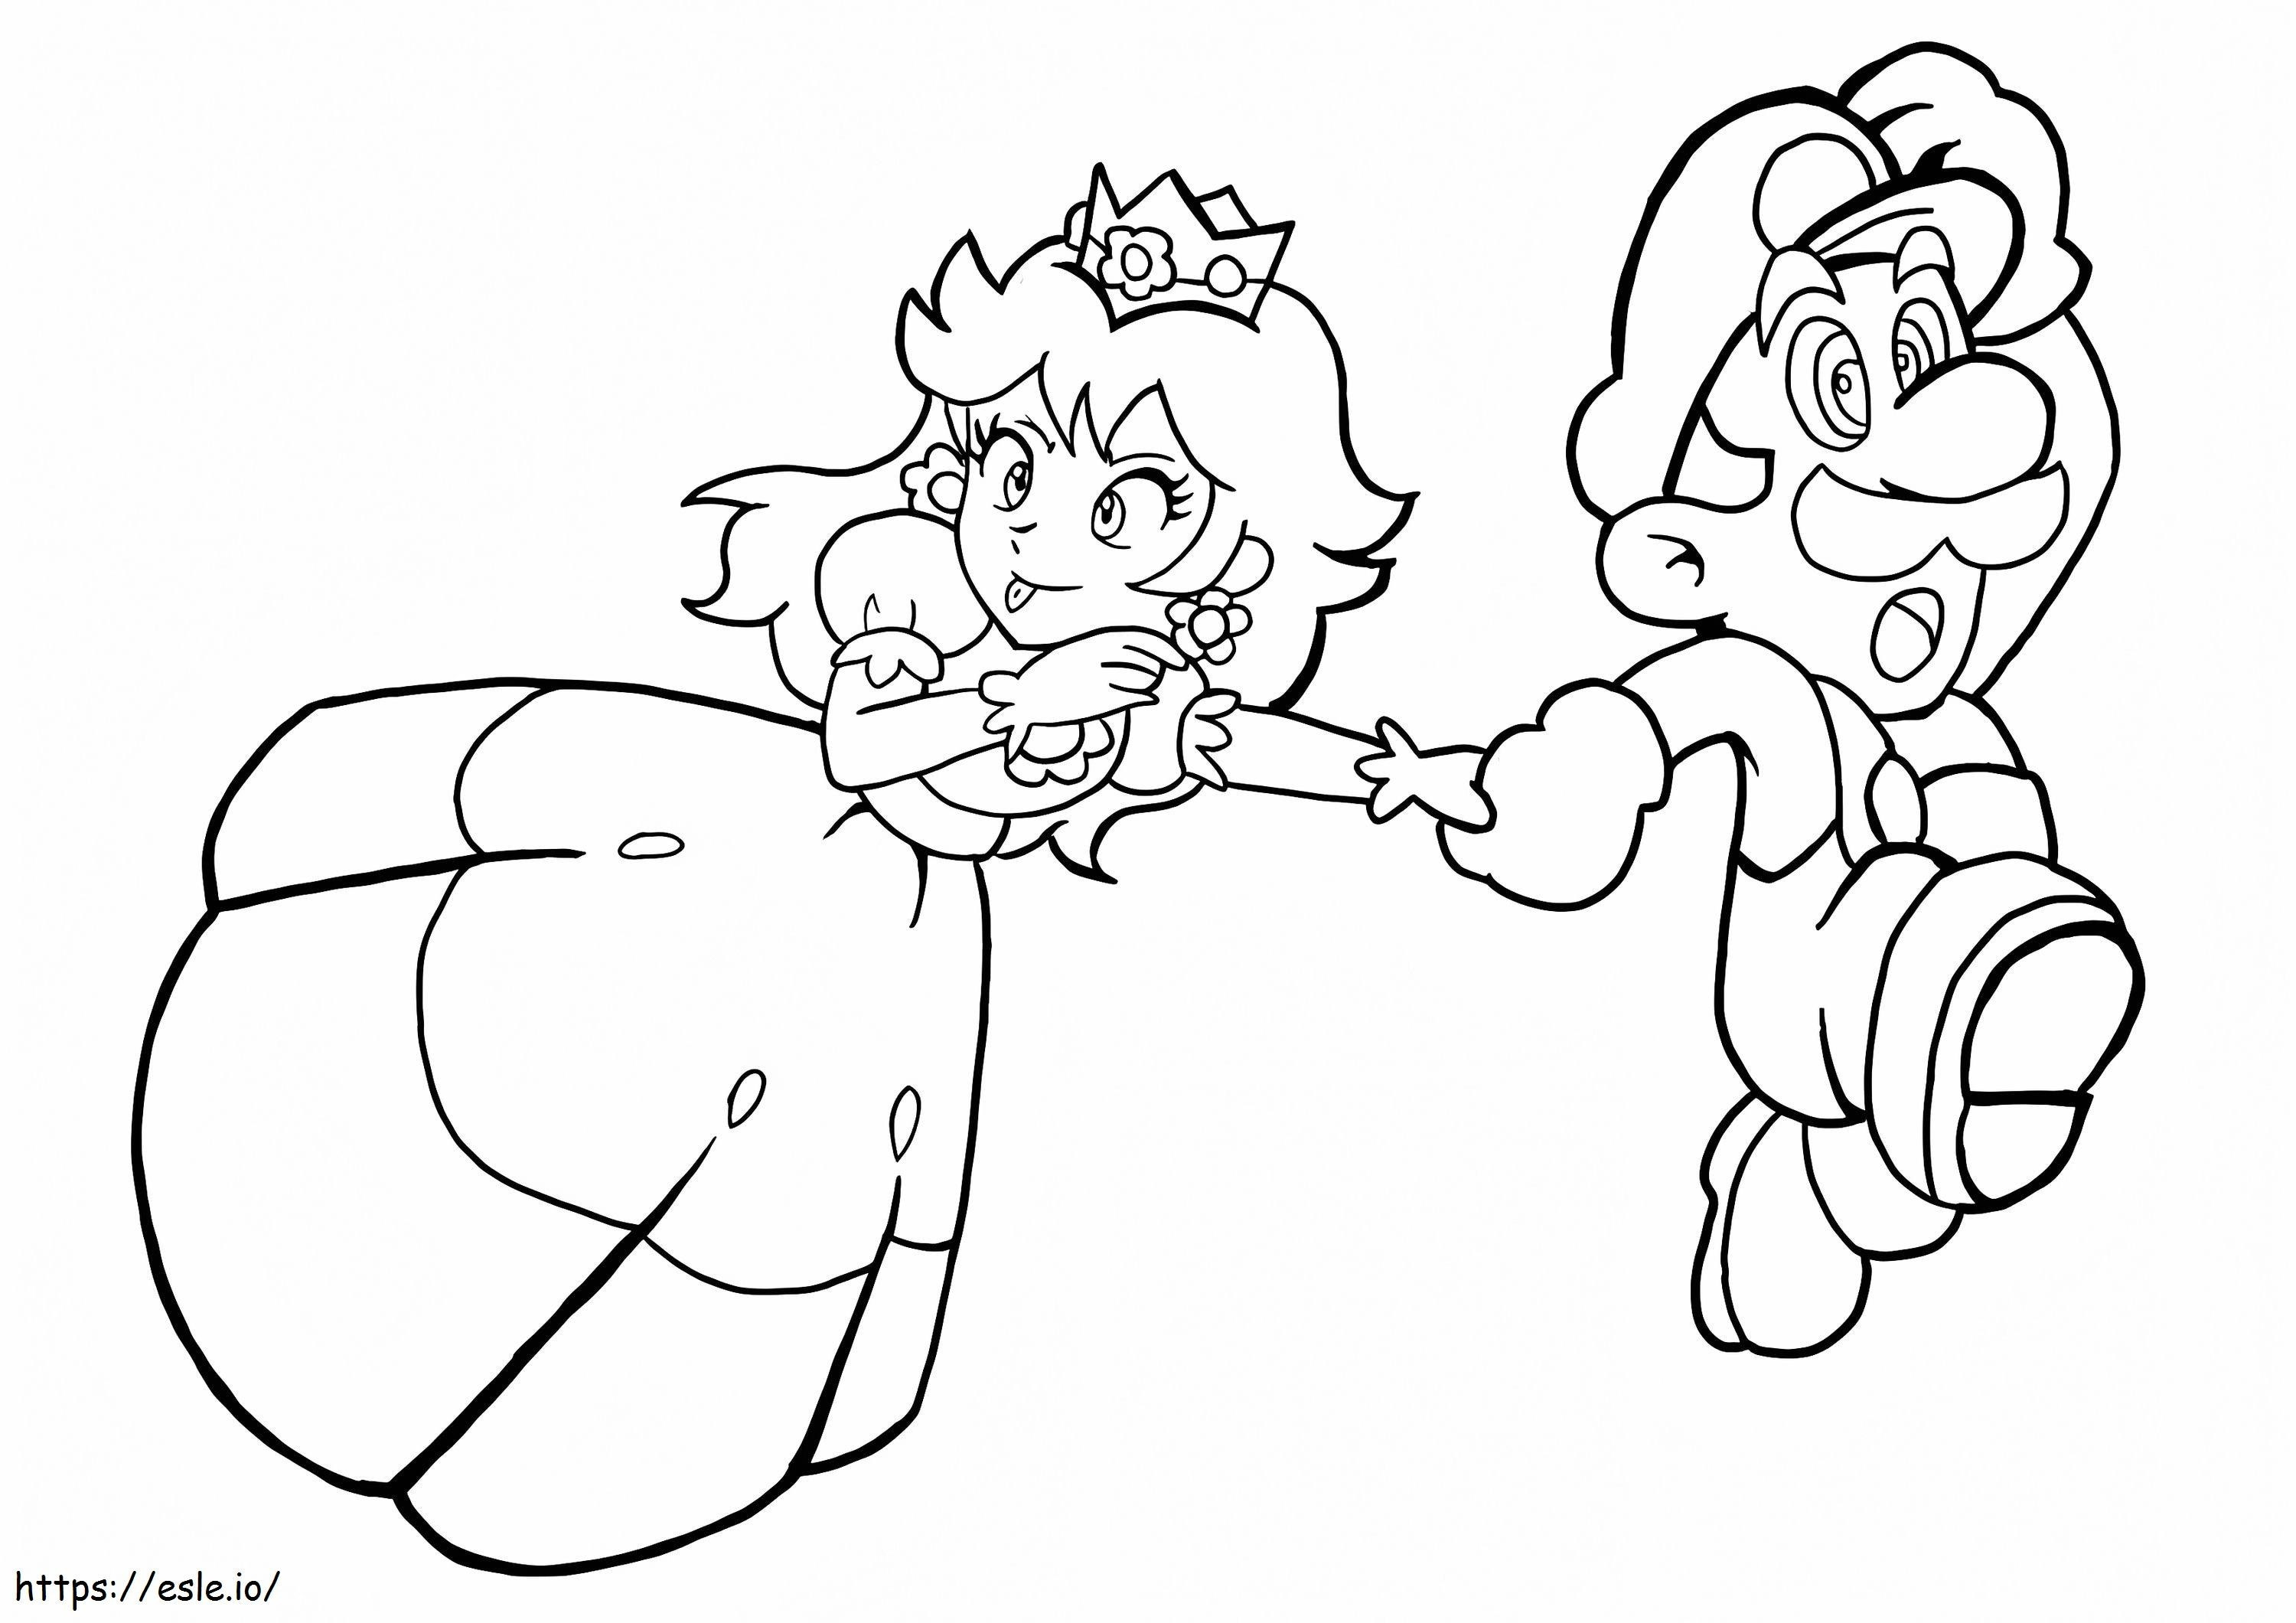 Divertida Princesa Peach y Mario Corriendo para colorear